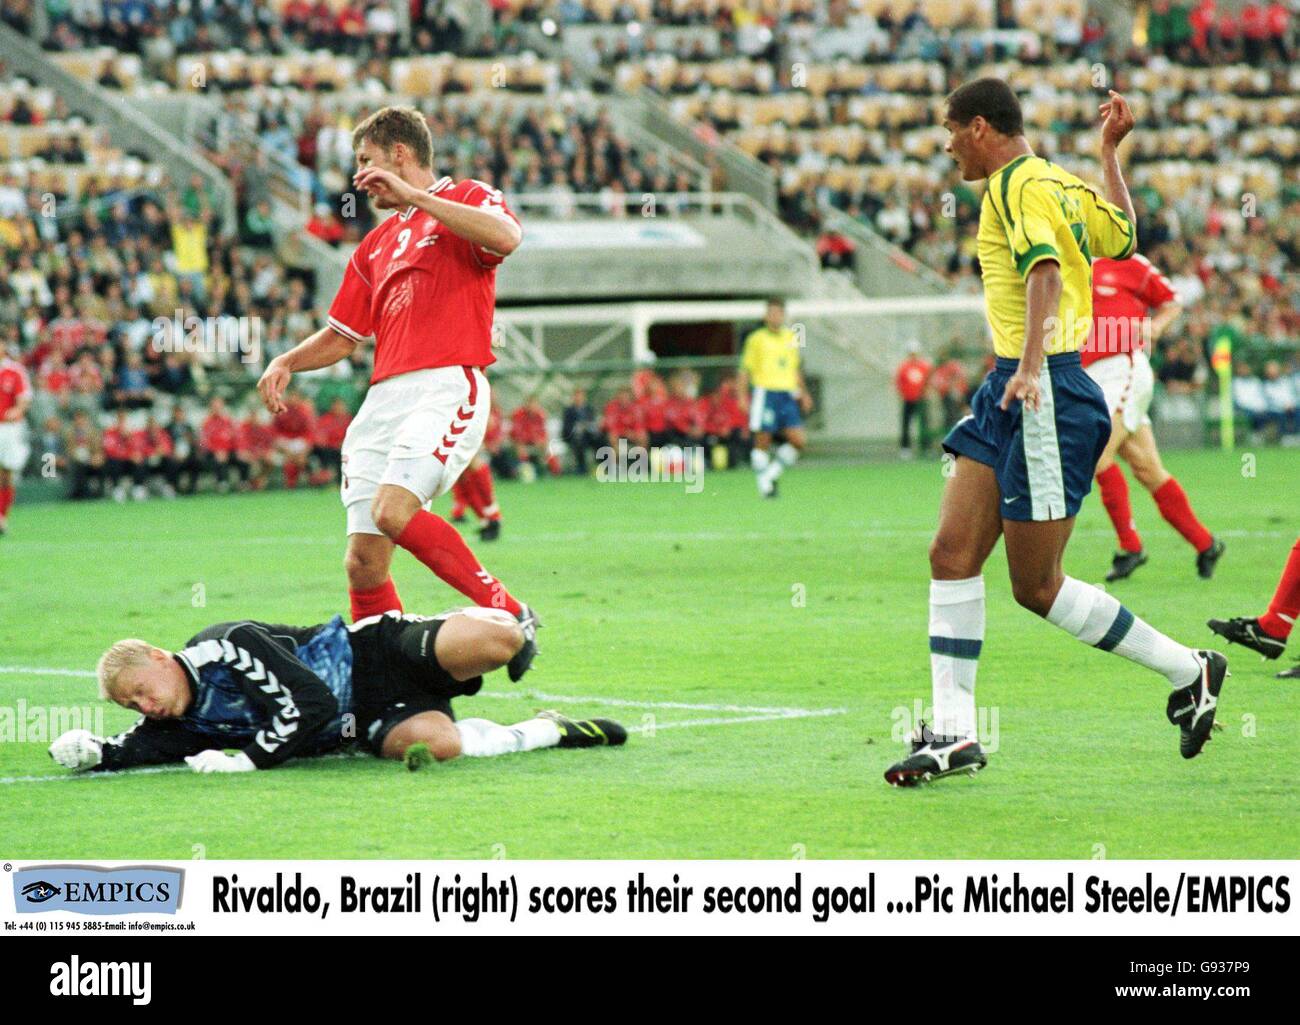 Fußball - Weltmeisterschaft Frankreich 98 - Viertelfinale - Brasilien gegen Dänemark. Der dänische Torhüter Peter Schmeichel (links) kann nicht verhindern, dass Rivaldo aus Brasilien (rechts) das zweite Tor Brasiliens erzielt Stockfoto